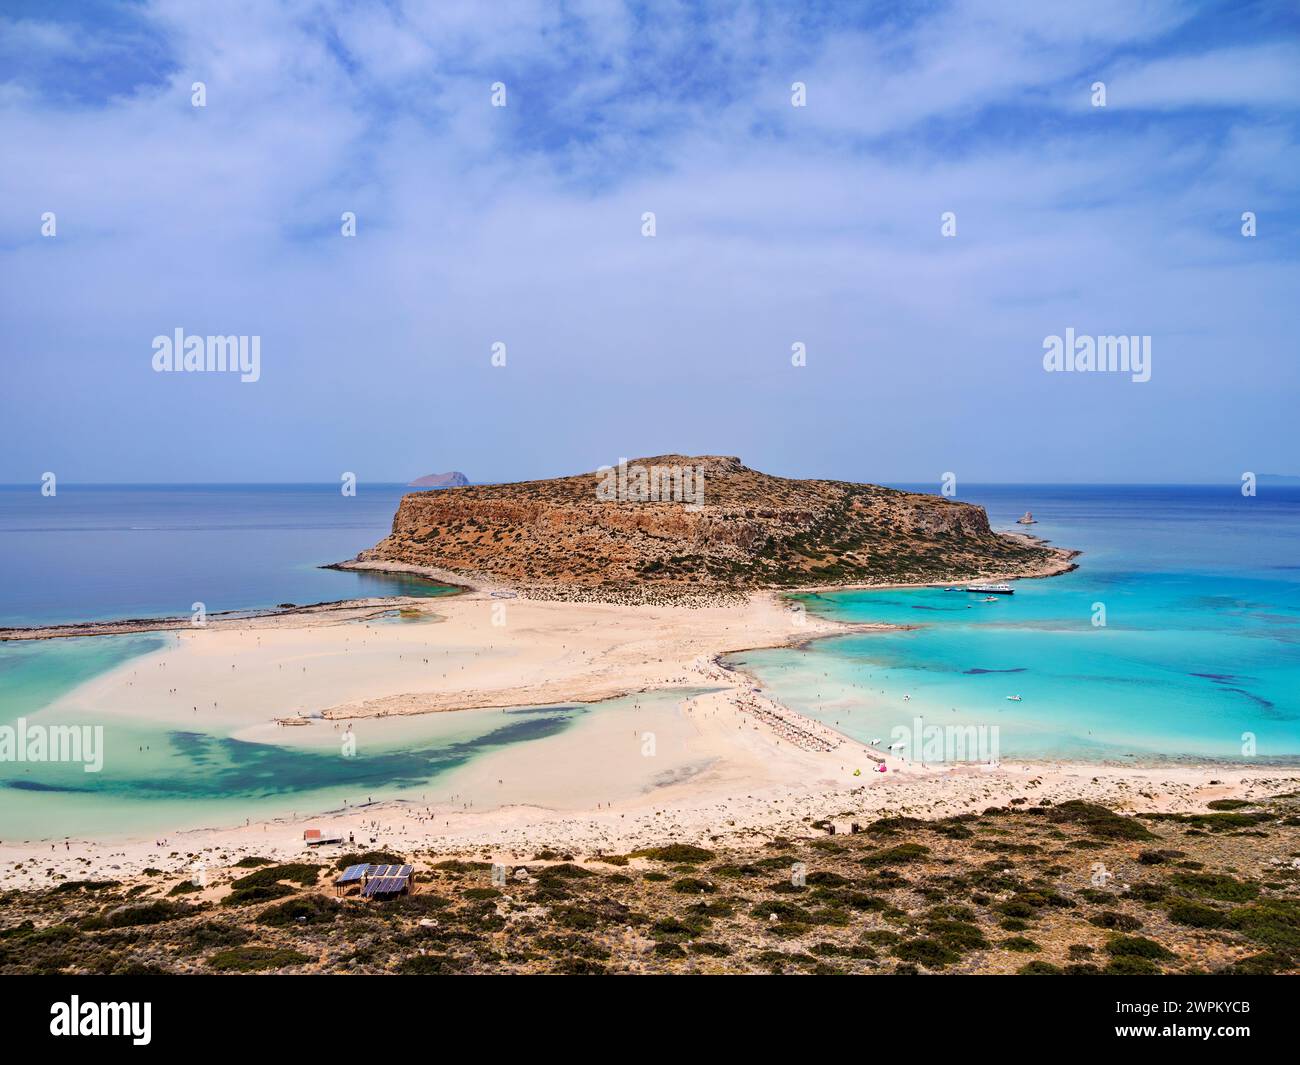 Balos Lagoon Beach e Cape Tigani, vista sopraelevata, penisola di Gramvousa, regione della Canea, Creta, isole greche, Grecia, Europa Foto Stock